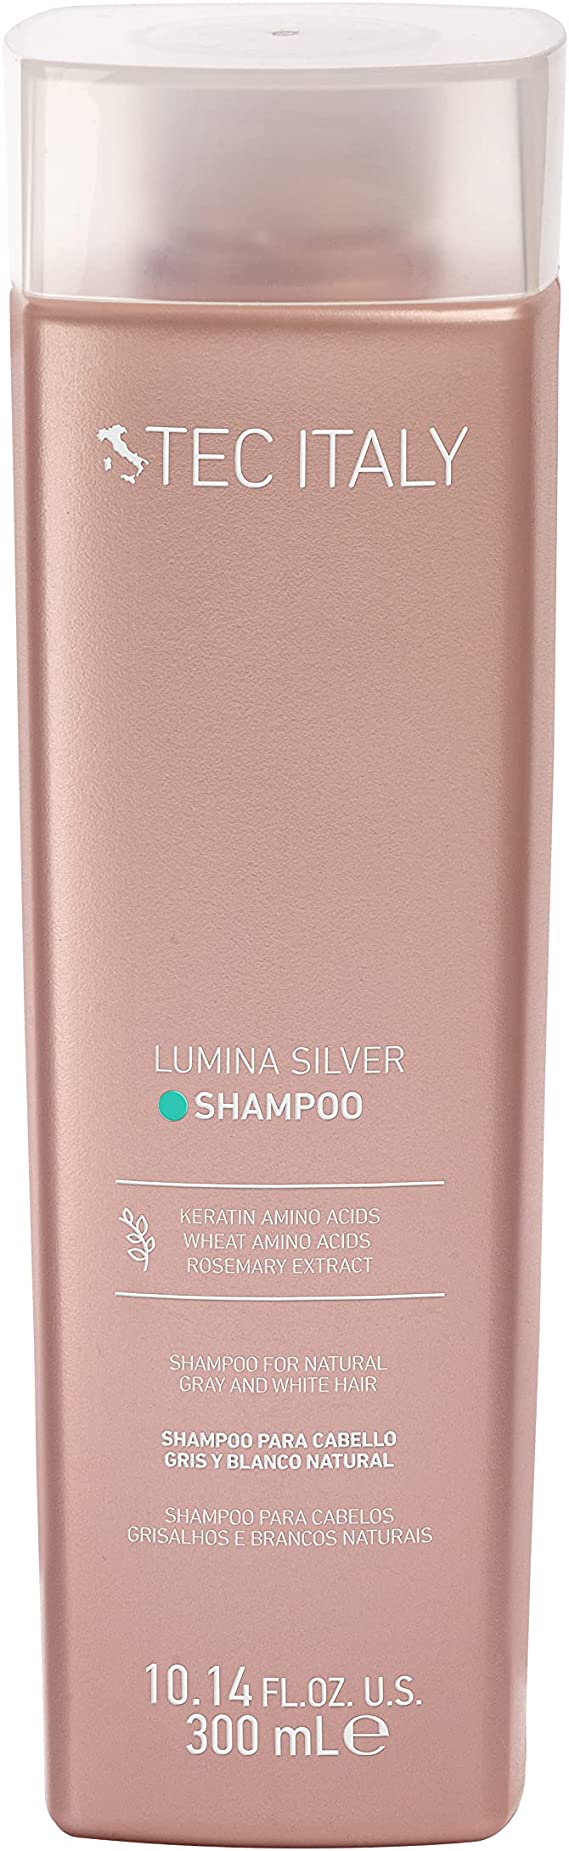 TEC ITALY Lumina Shampoo 300ml